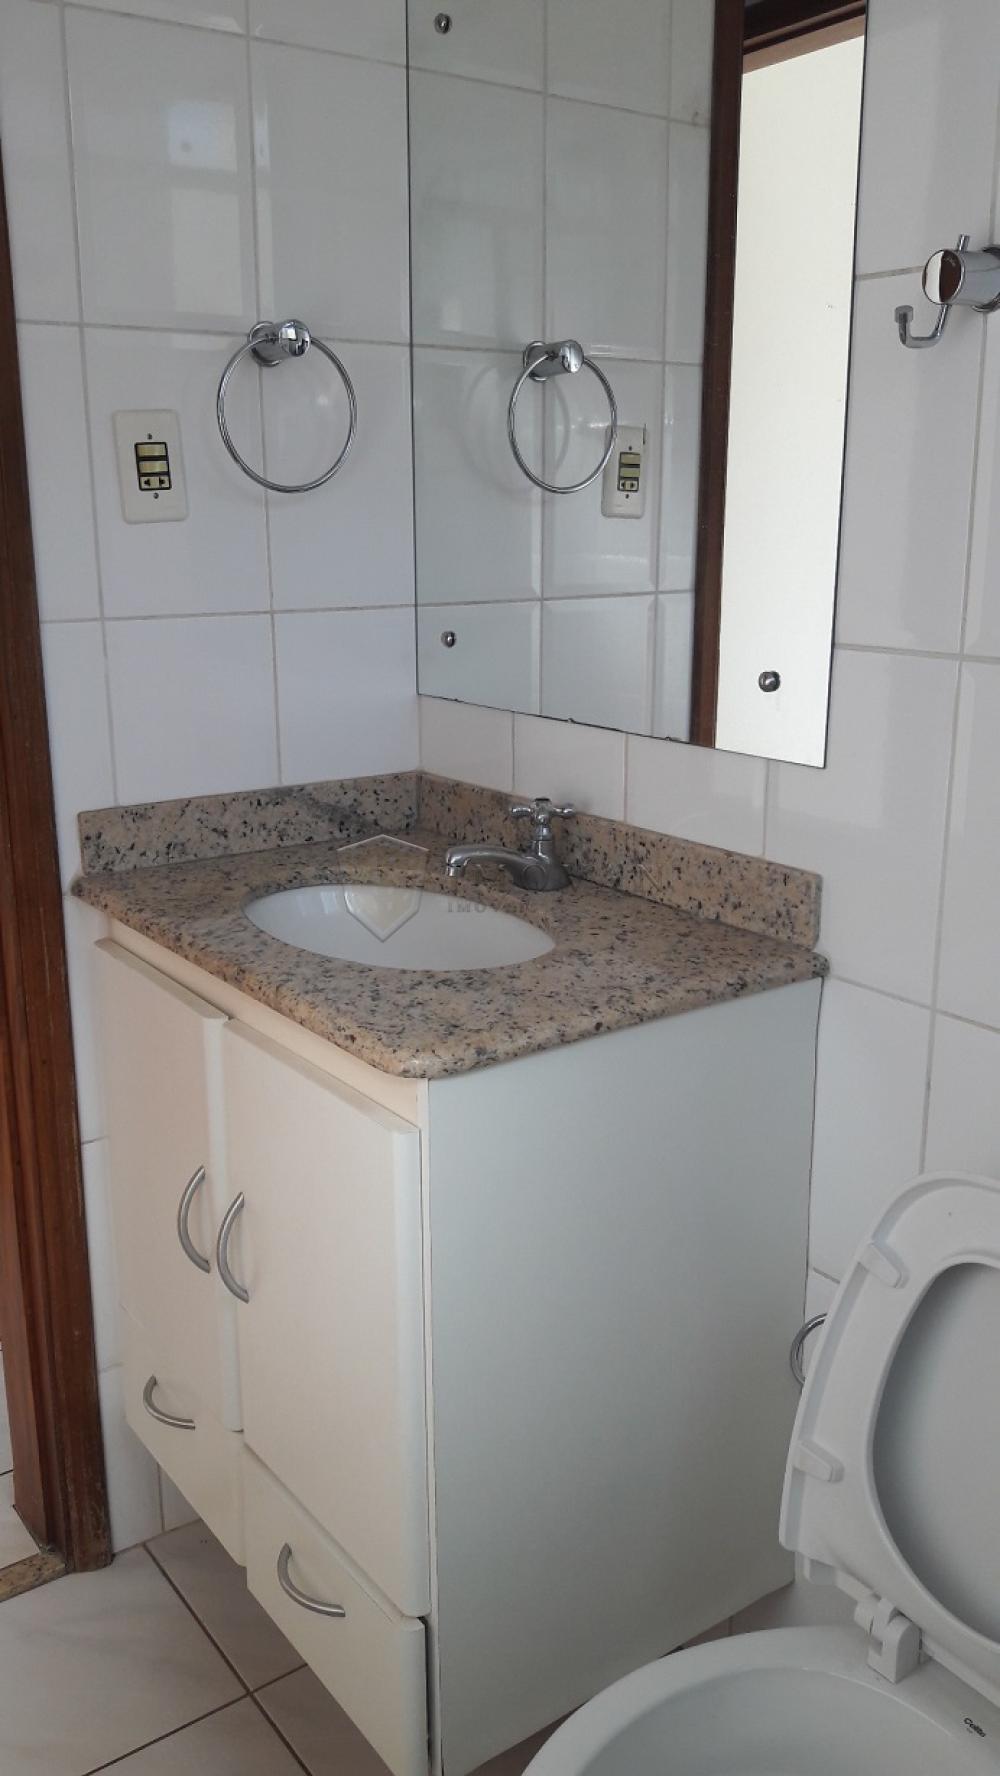 Alugar Apartamento / Padrão em Ribeirão Preto R$ 980,00 - Foto 8